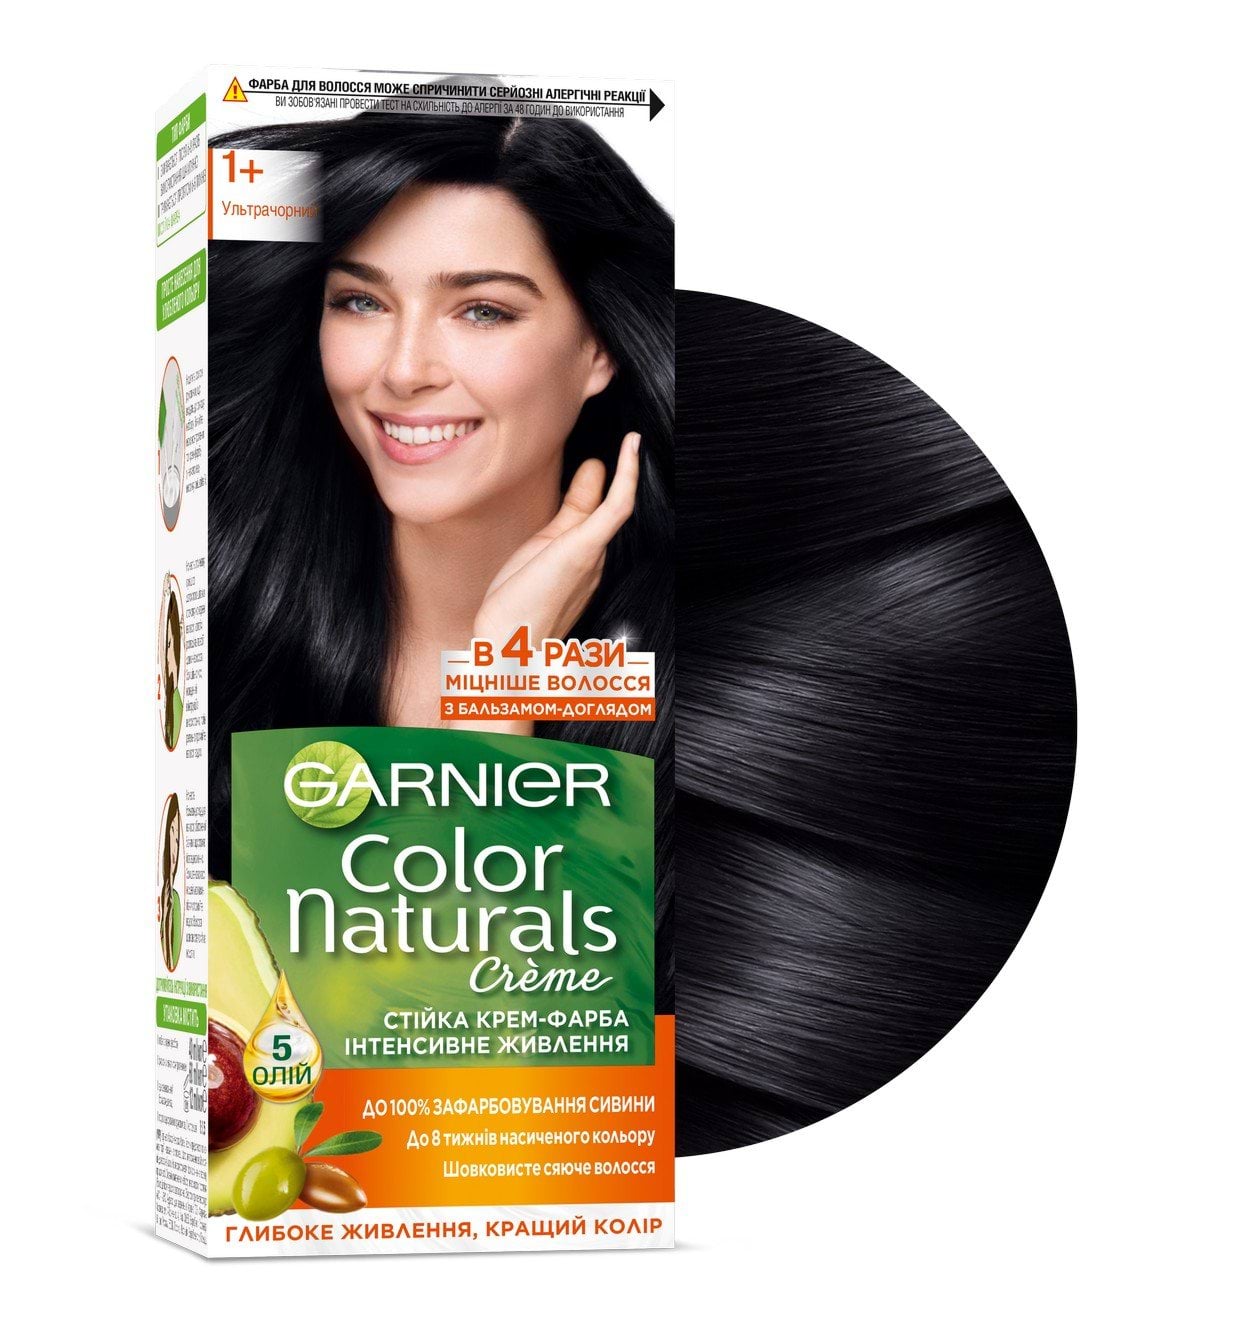 Краска для волос Garnier Color Naturals оттенок 1+ Ультрачёрный